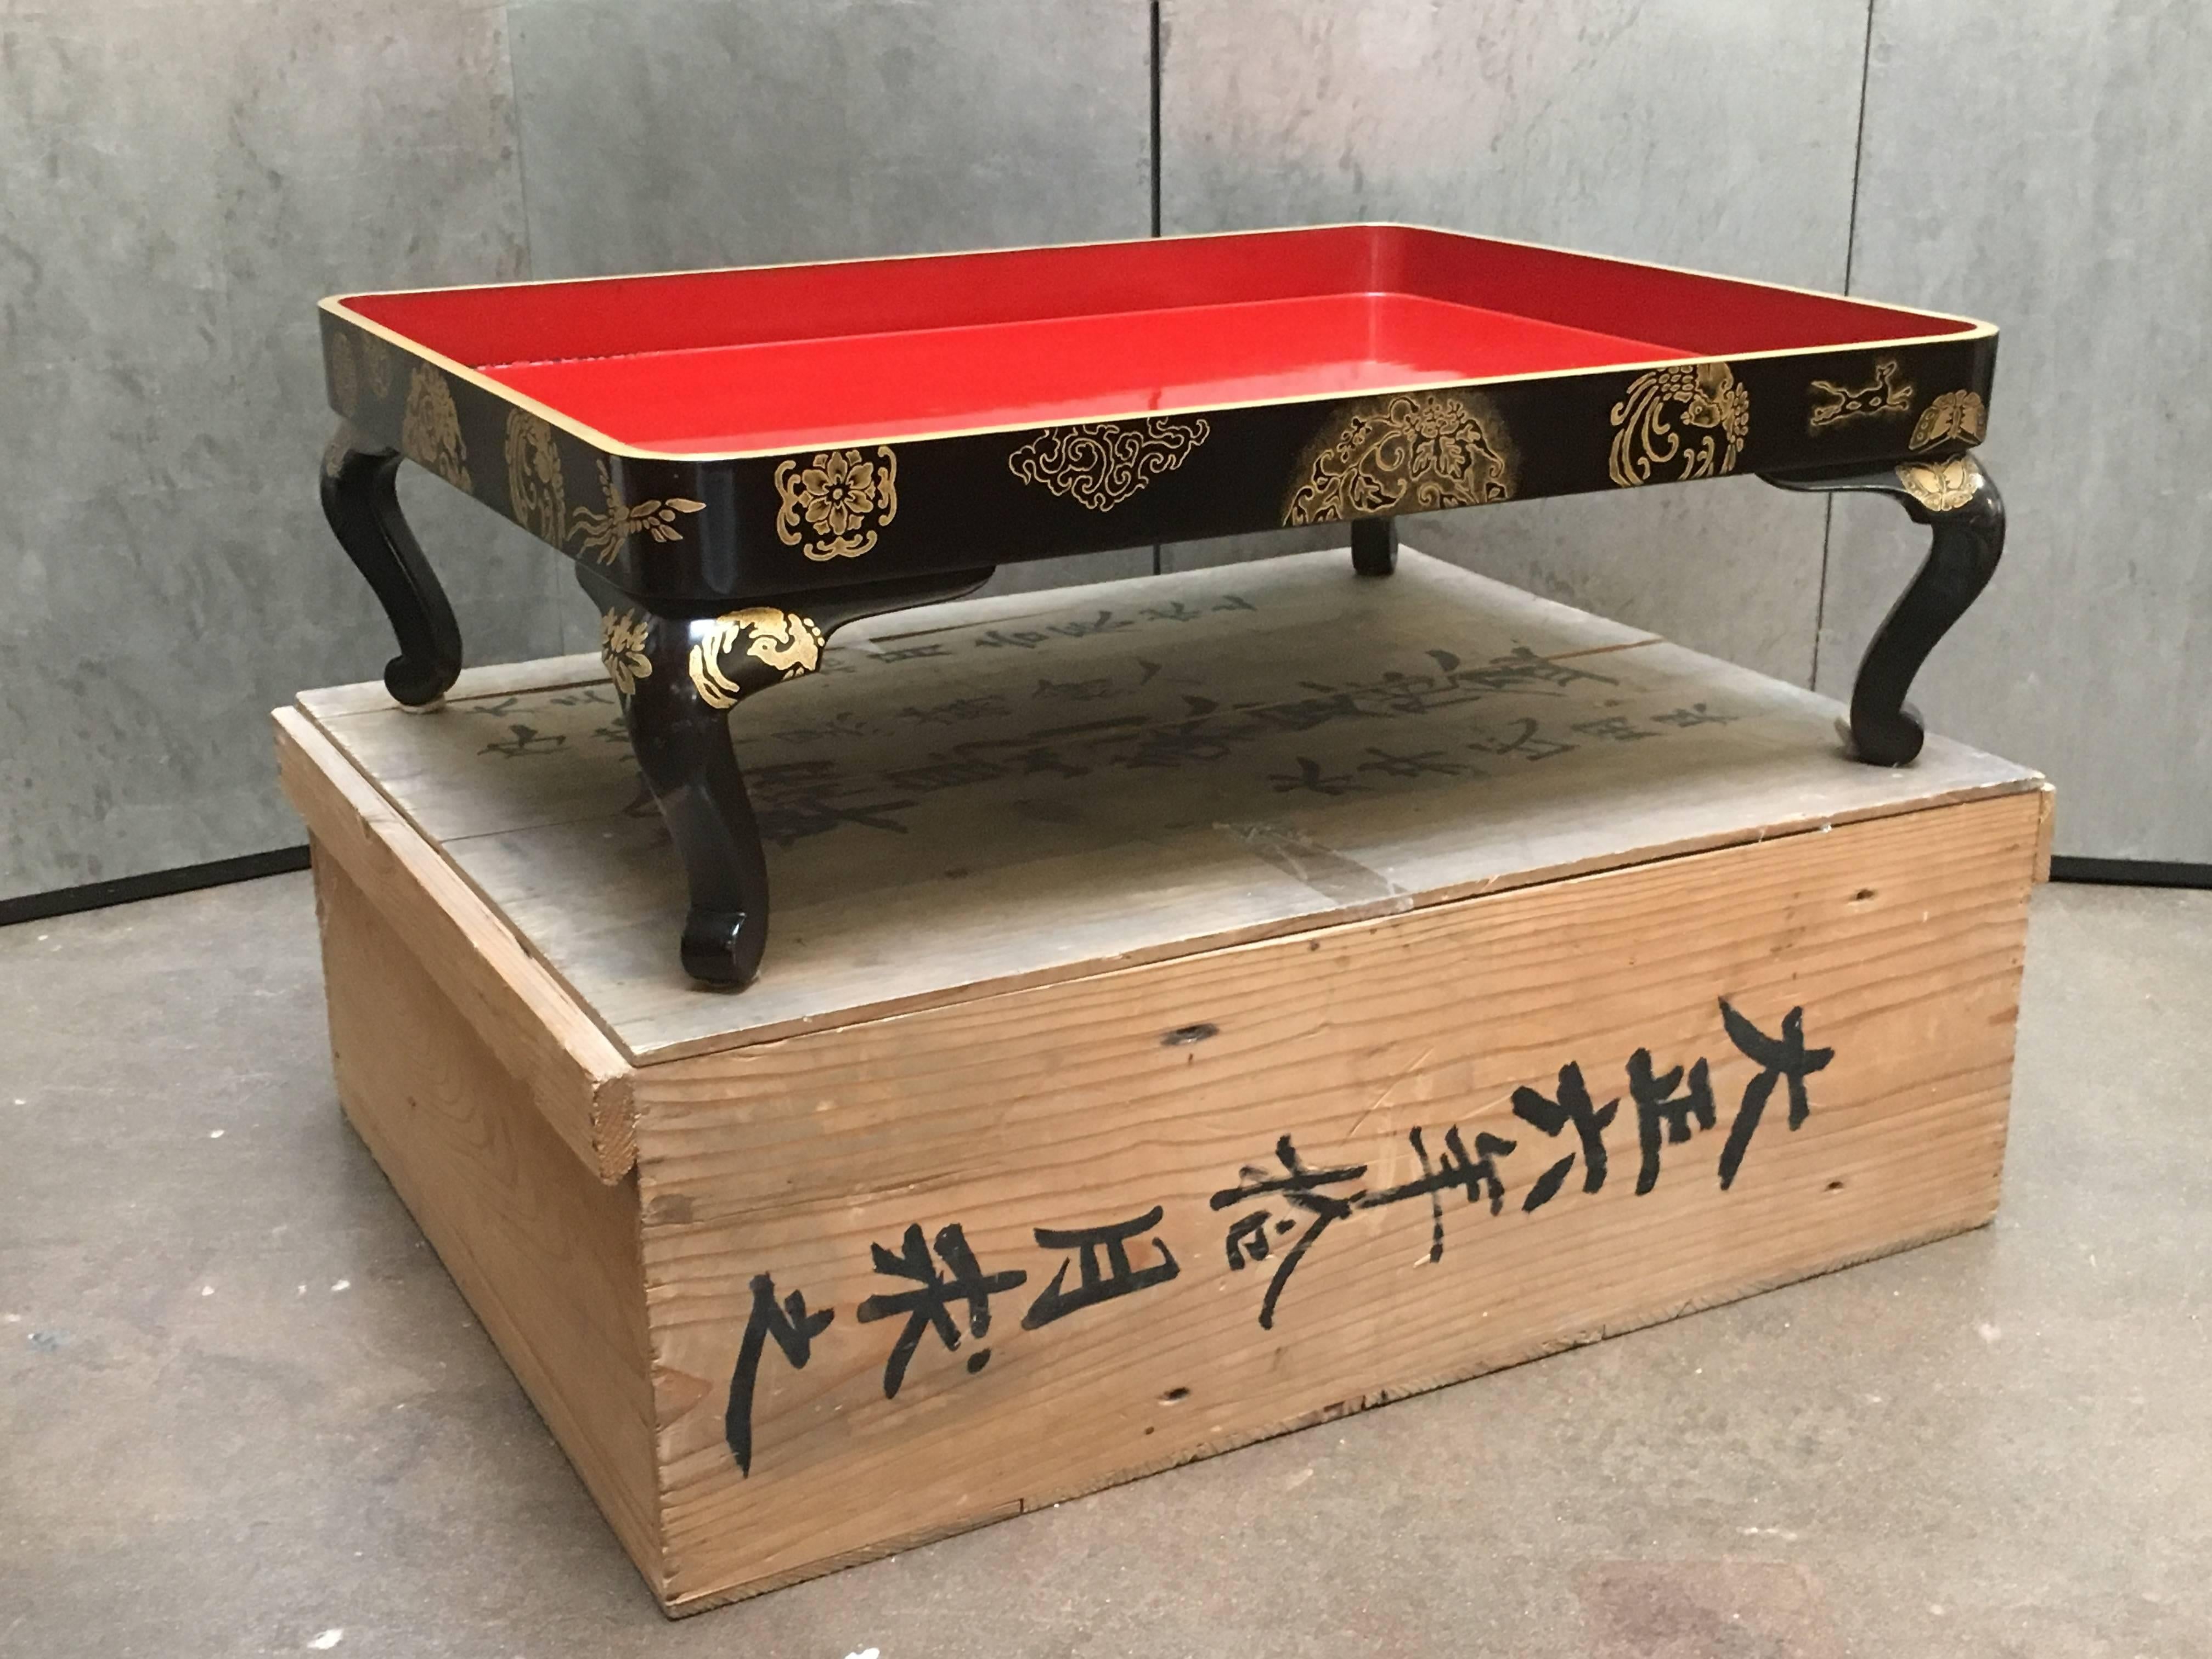 Ein feines japanisches Präsentationstablett aus rotem und schwarzem Maki-e-Lack mit originaler Tomobako-Aufbewahrungsbox, Taisho-Periode, datiert 1917, Japan.

Das große Präsentationstablett steht auf Cabriole-Beinen und ist mit Maki-e-Motiven